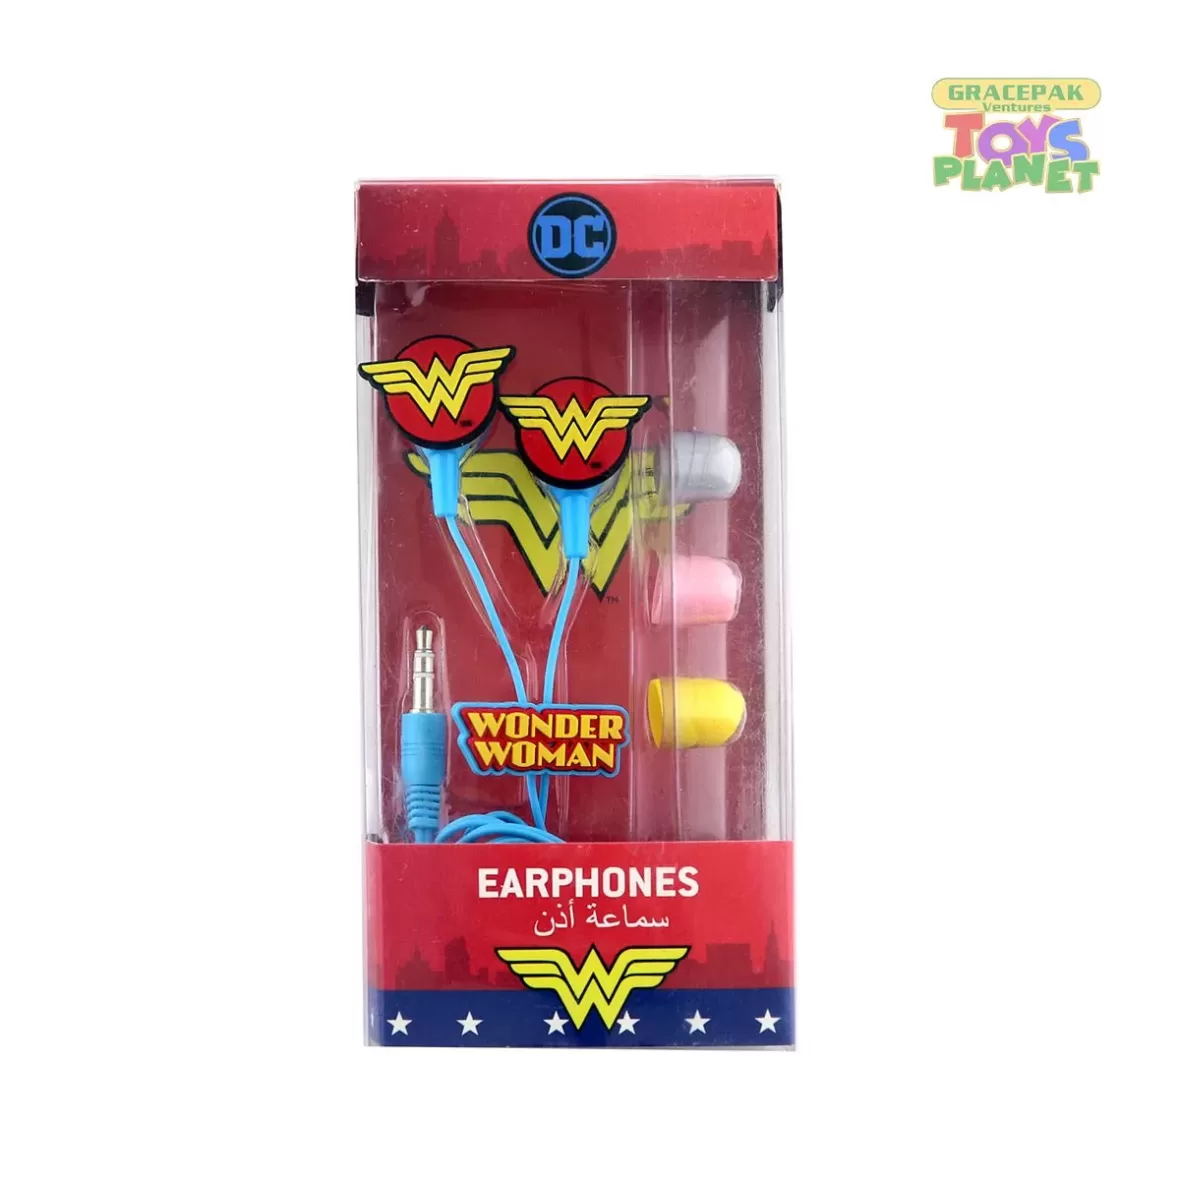 Warner Bros_DC Wonder Woman Ear Phones_3